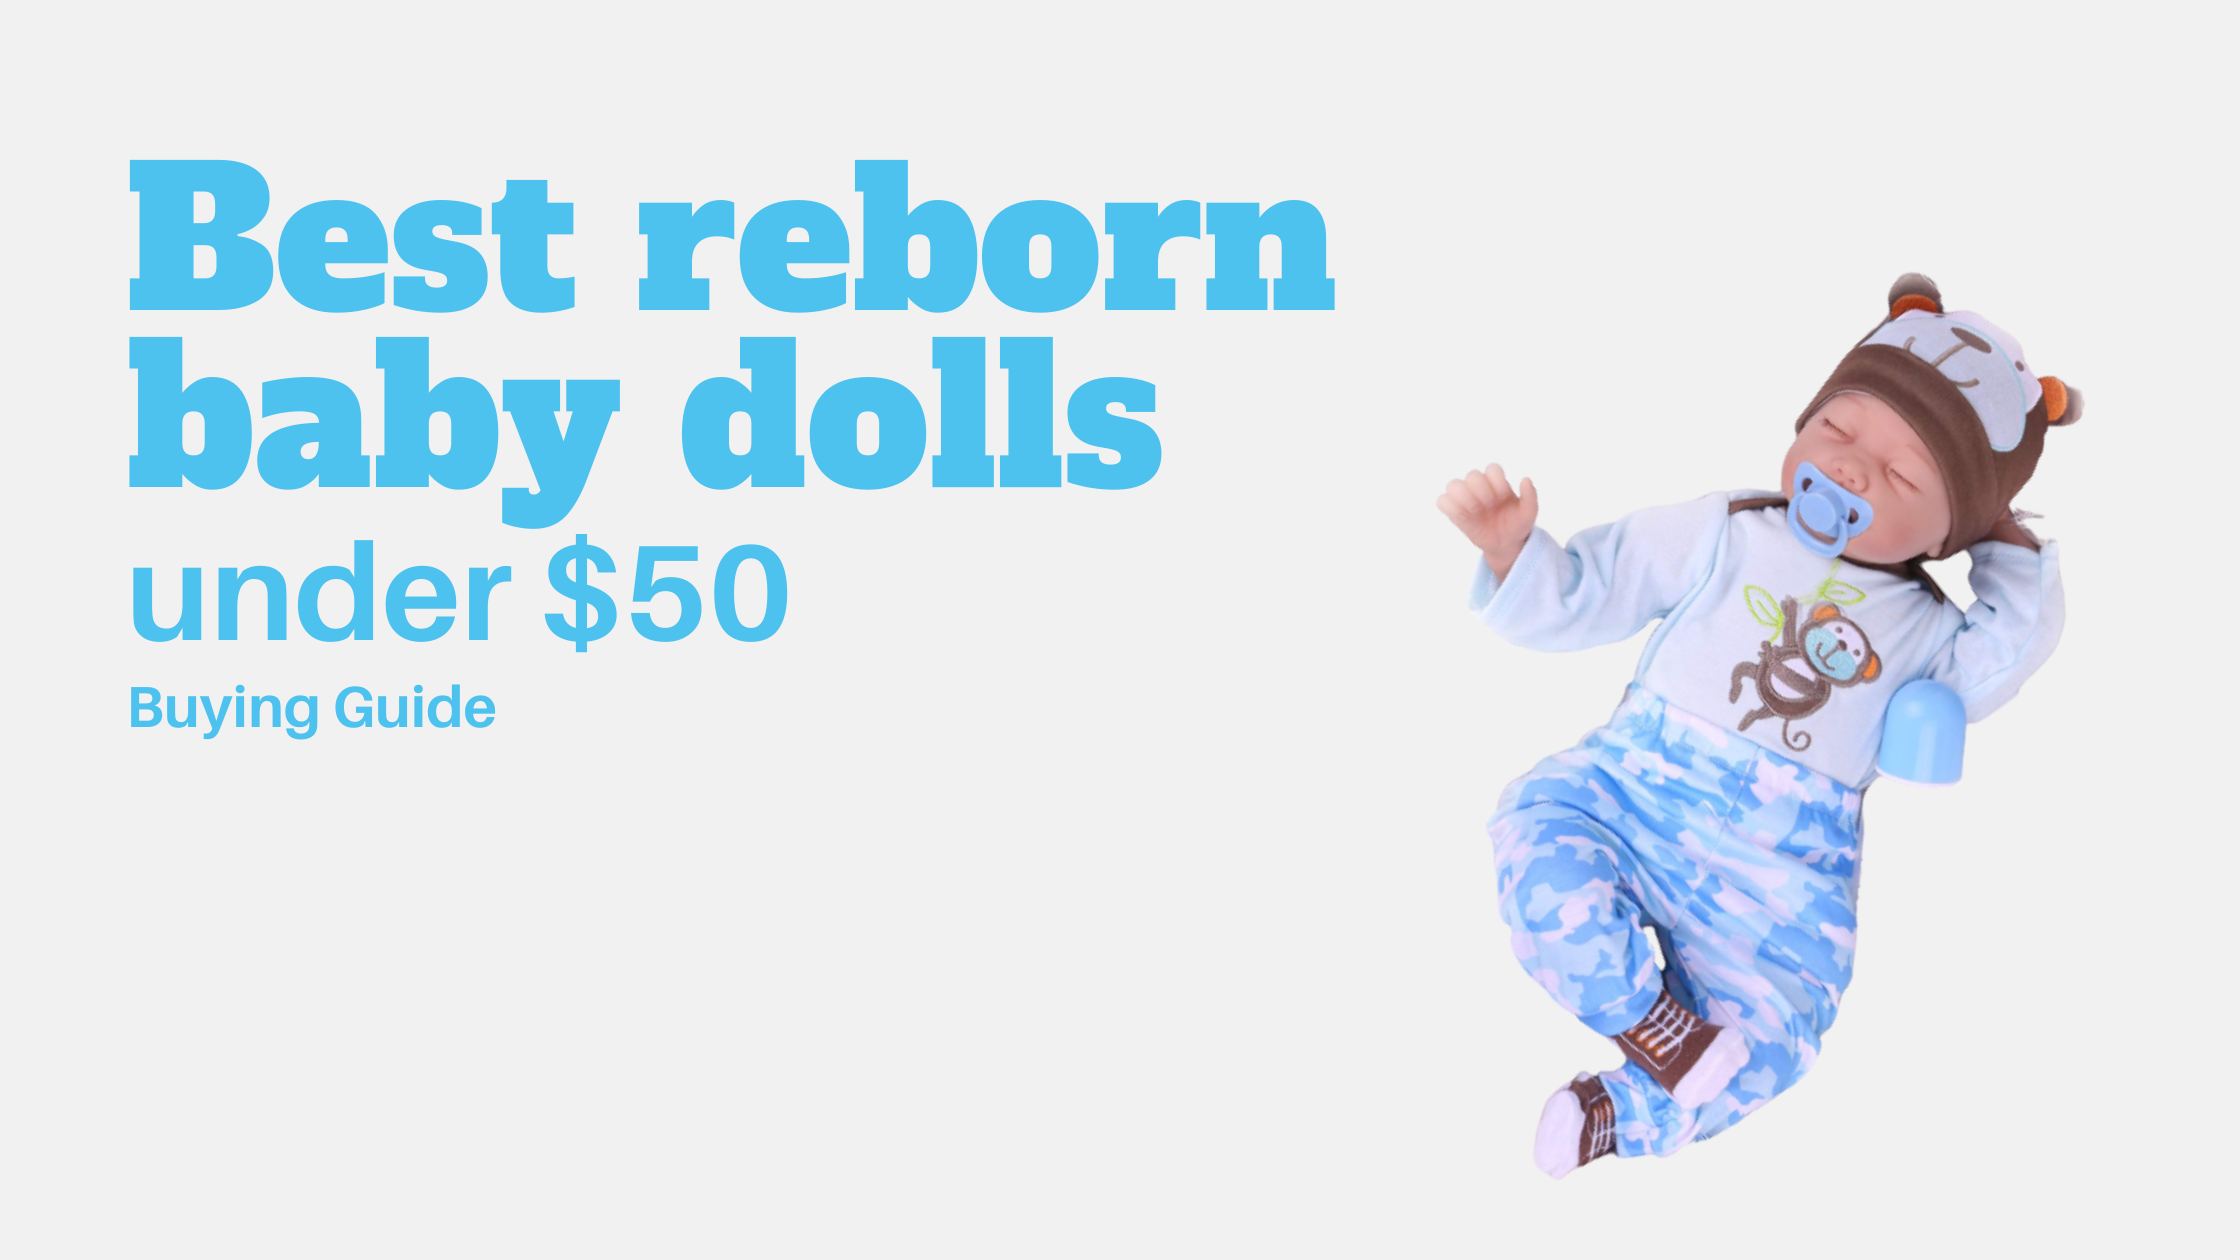 13 Best reborn baby dolls under $50